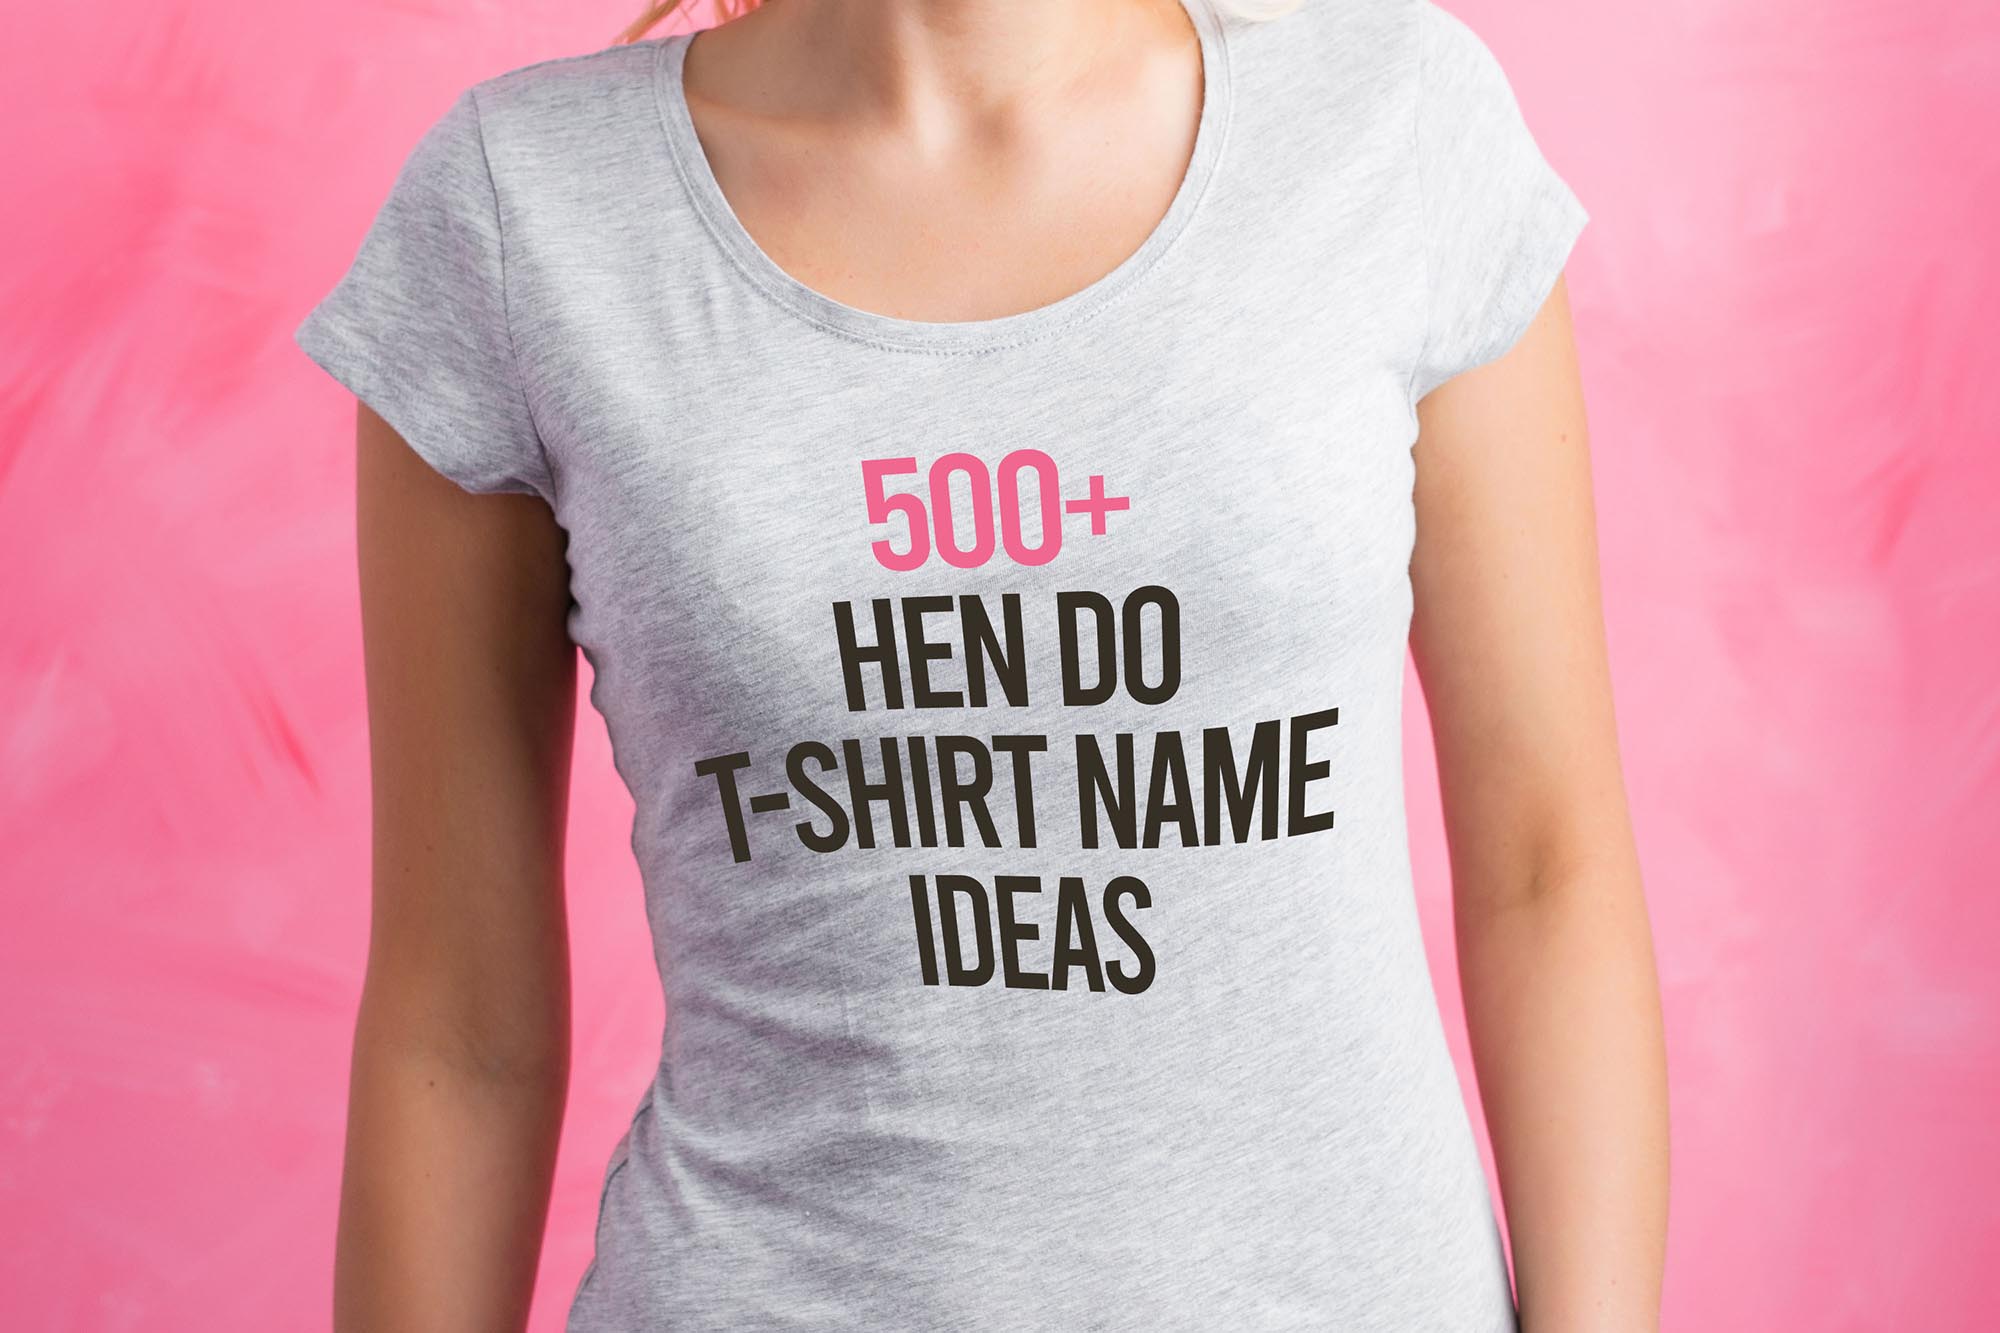 Hen Do T-shirt Names List Ideas (1)